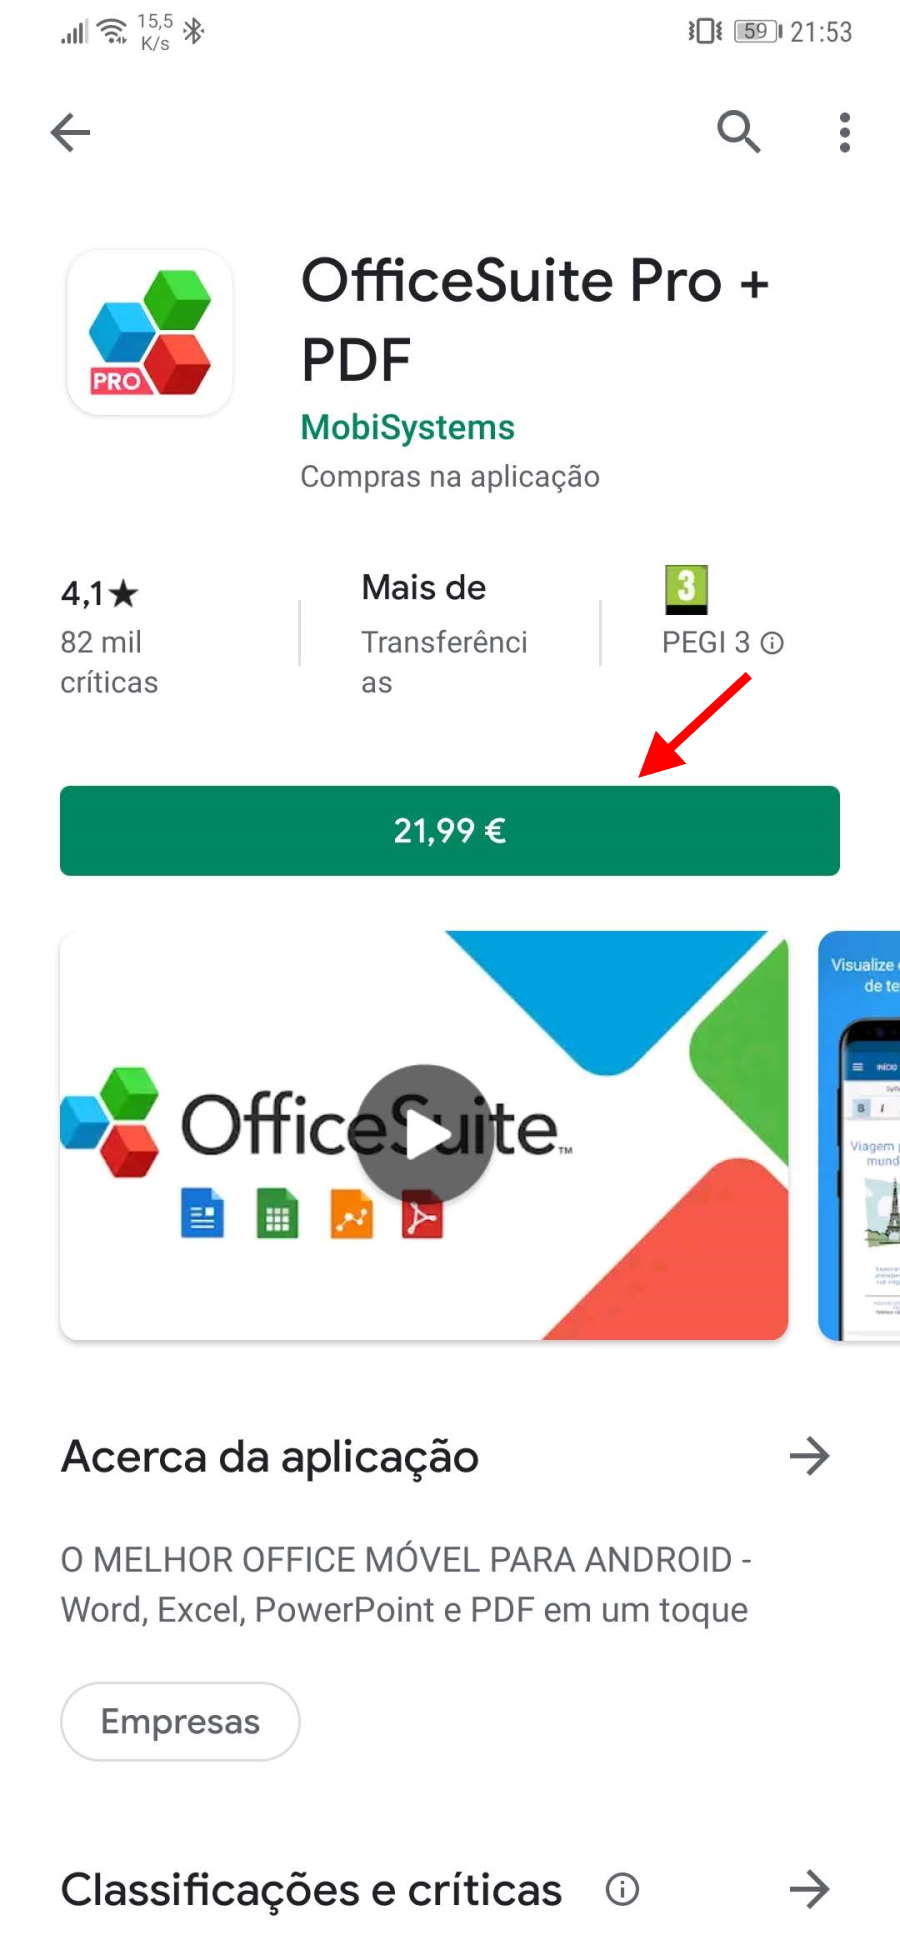 Google Play - Paga com MEO